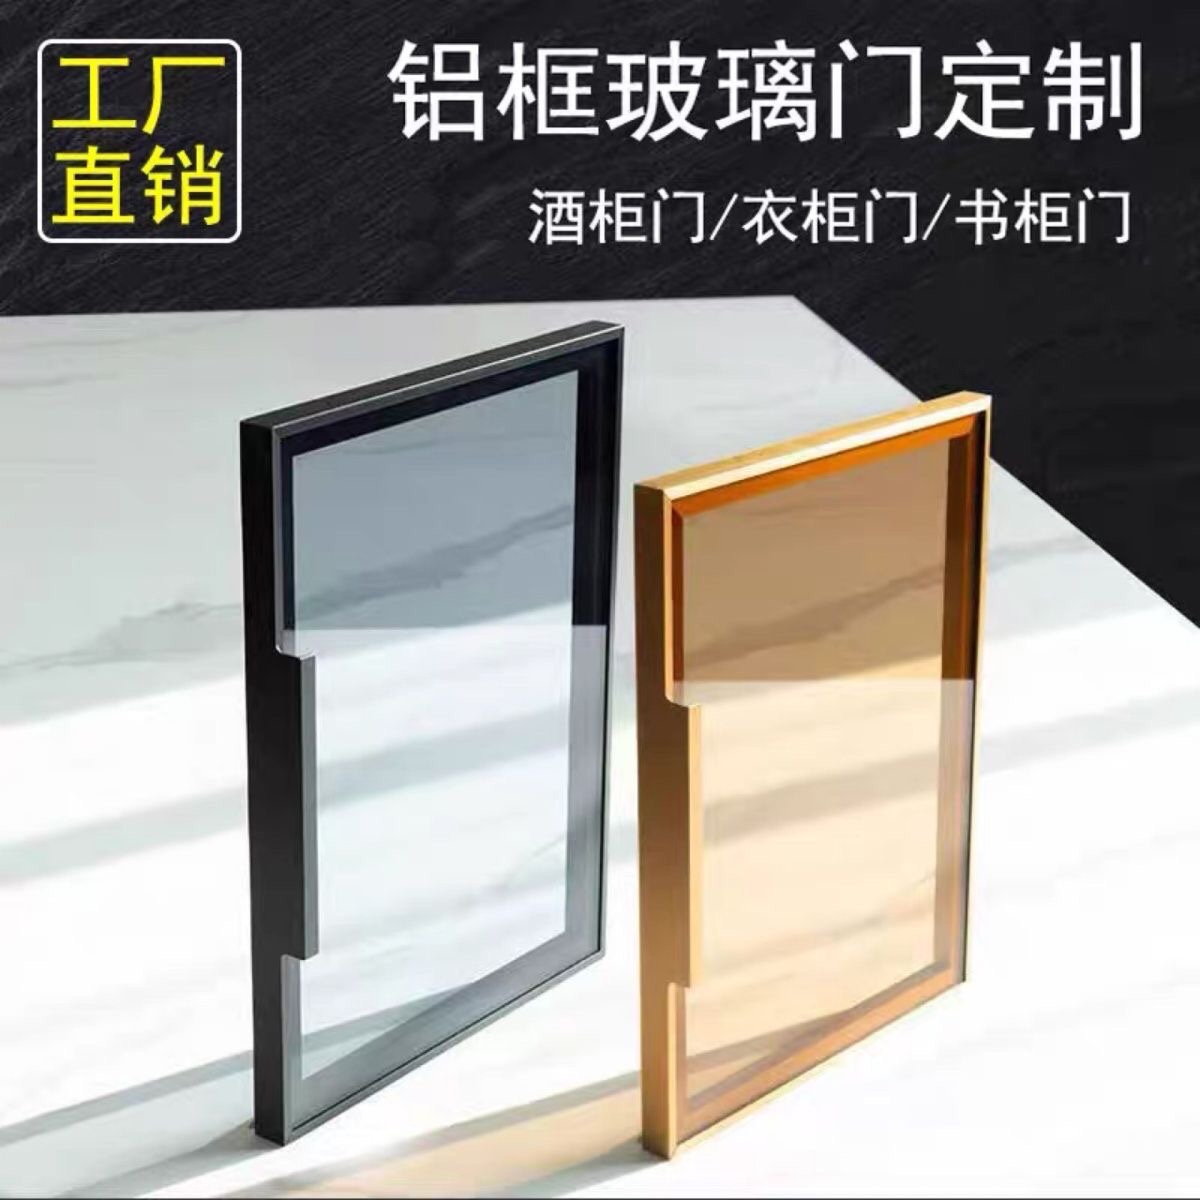 极简轻奢钢化玻璃衣柜门定制窄边茶灰黑色透明铝框酒柜书柜门定做